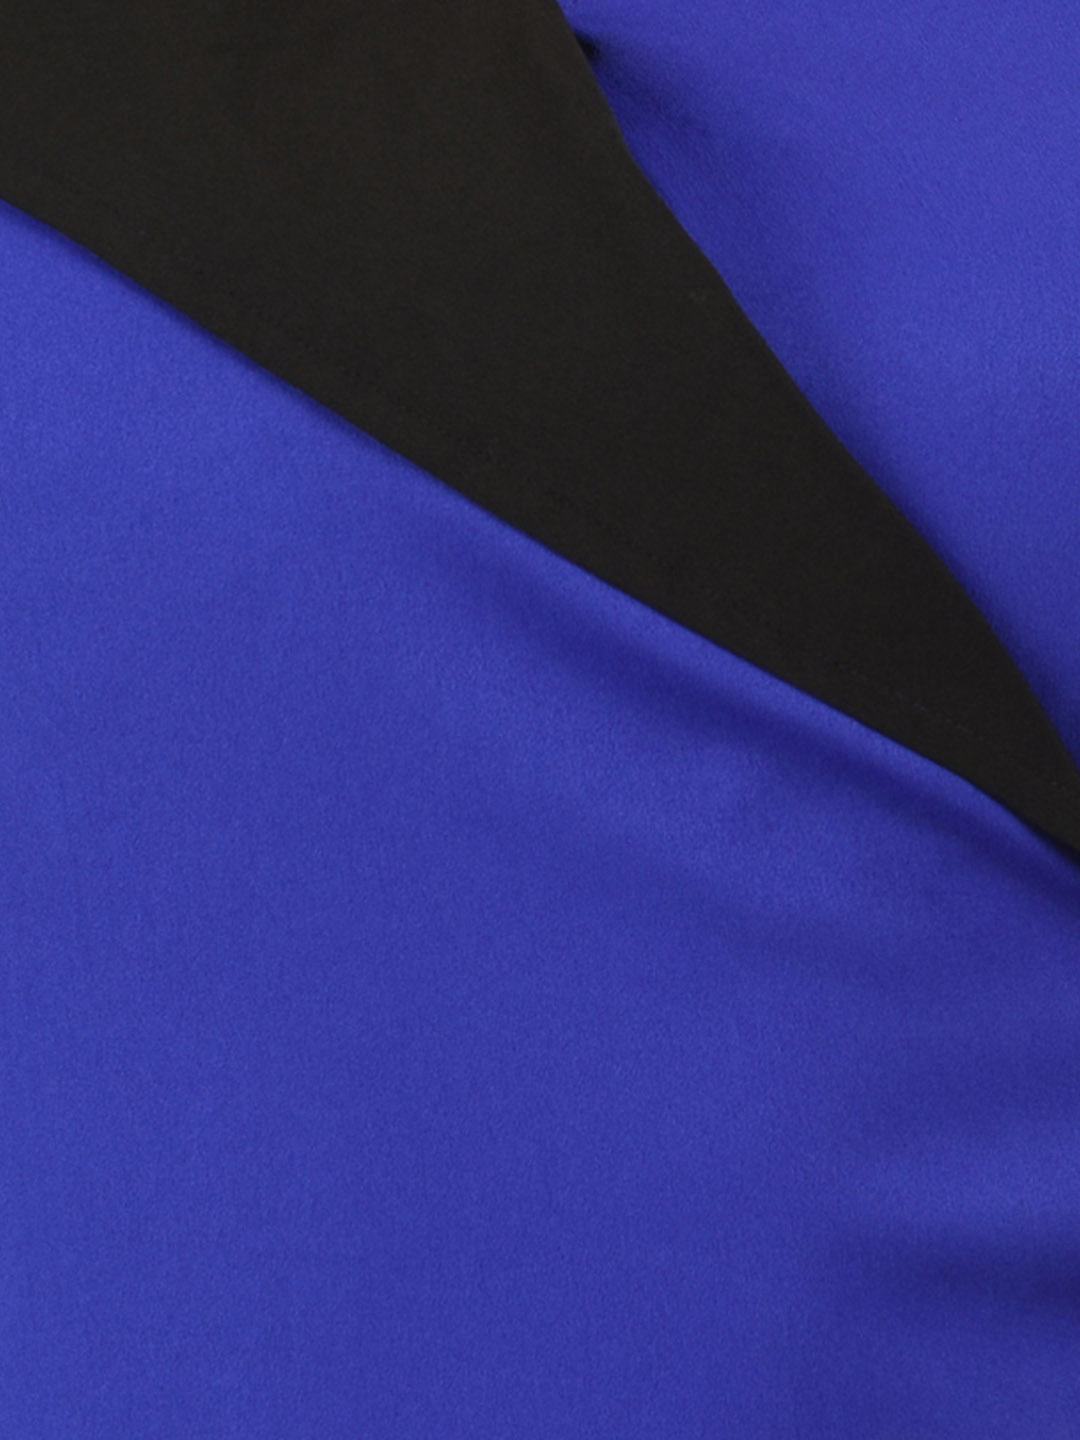 Accessories To Match Cobalt Blue Dress